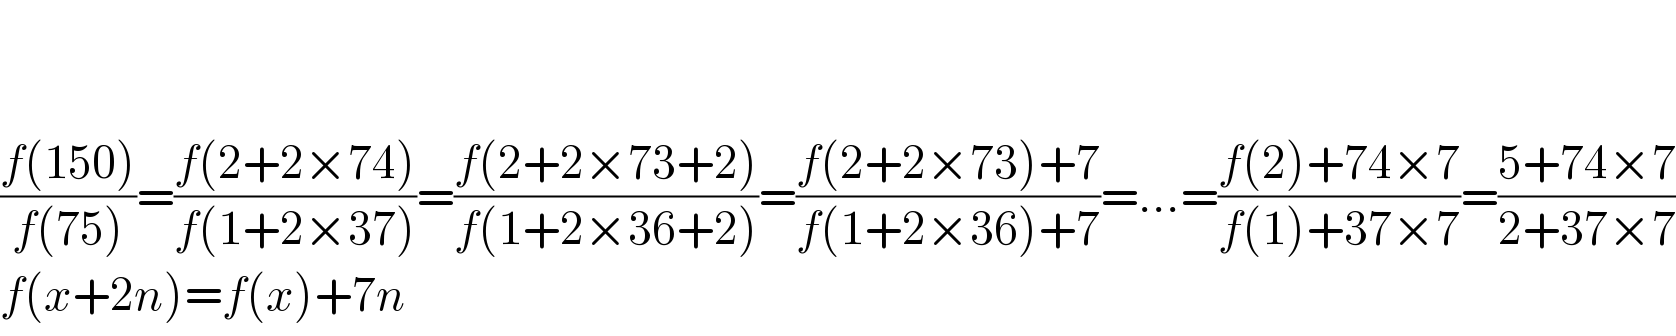     ((f(150))/(f(75)))=((f(2+2×74))/(f(1+2×37)))=((f(2+2×73+2))/(f(1+2×36+2)))=((f(2+2×73)+7)/(f(1+2×36)+7))=...=((f(2)+74×7)/(f(1)+37×7))=((5+74×7)/(2+37×7))  f(x+2n)=f(x)+7n  